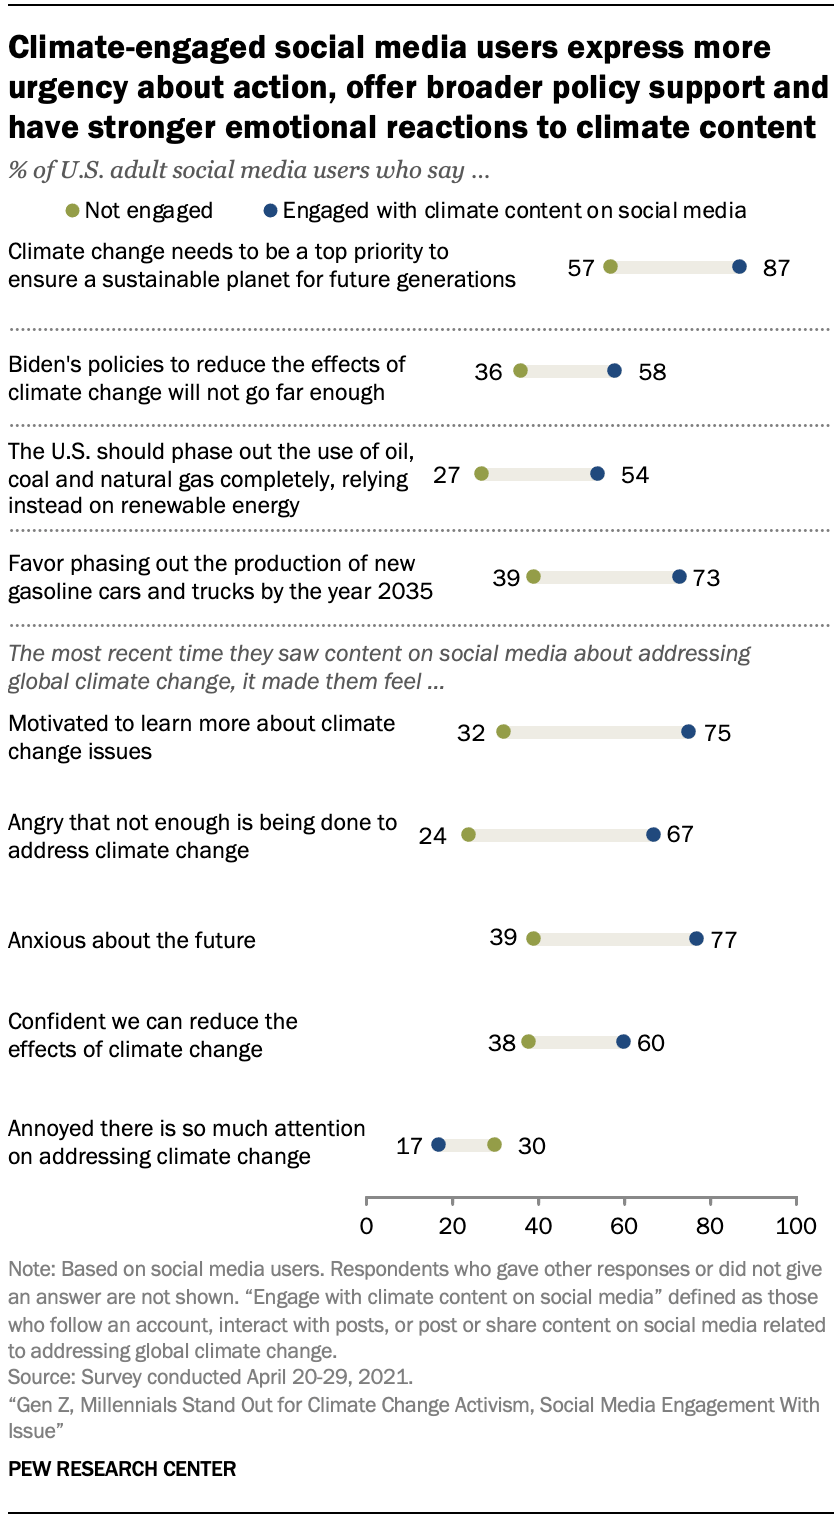 Пользователи социальных сетей, занимающиеся вопросами климата, выражают более неотложные действия, предлагают более широкую политическую поддержку и более эмоционально реагируют на климатический контент.